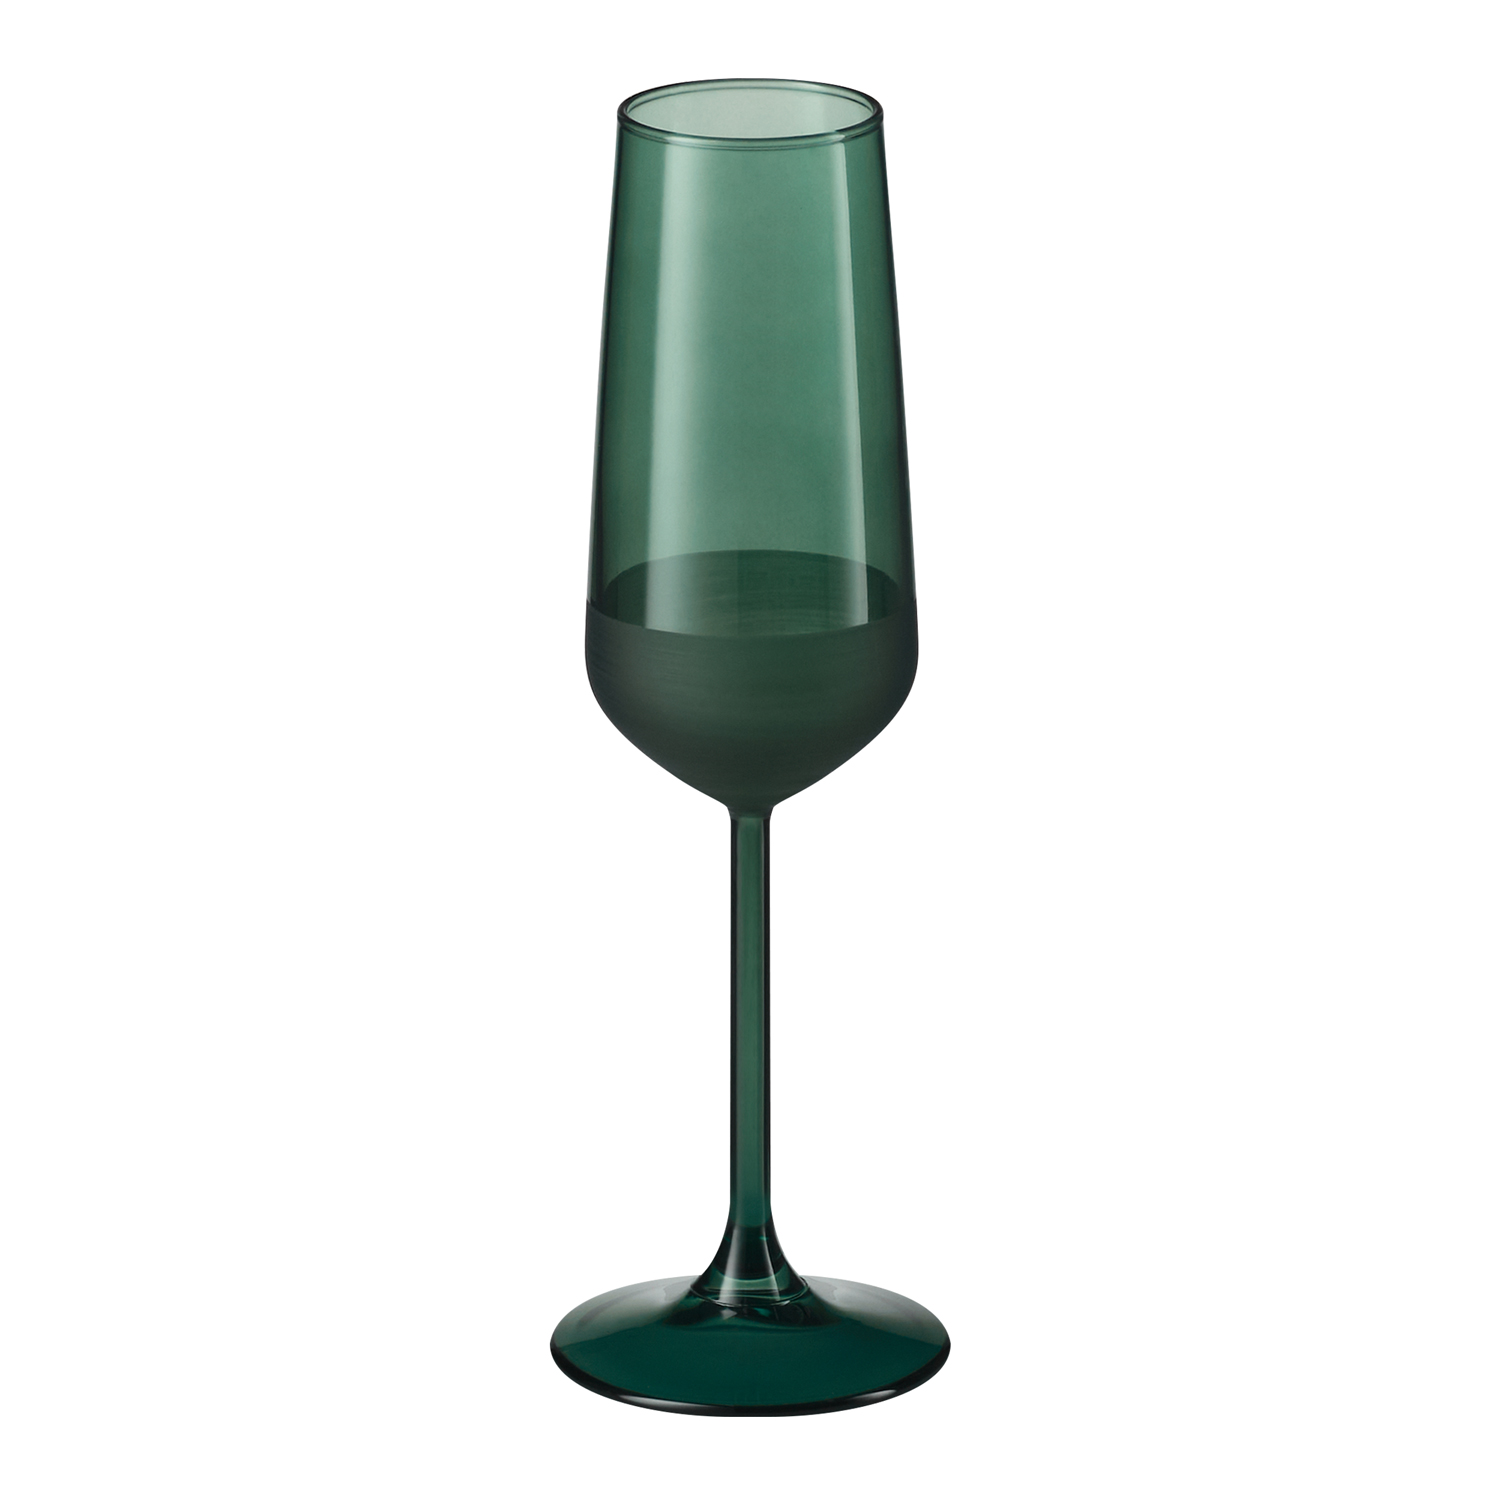 Артикул: A73079.040 — Бокал для шампанского Emerald, зеленый